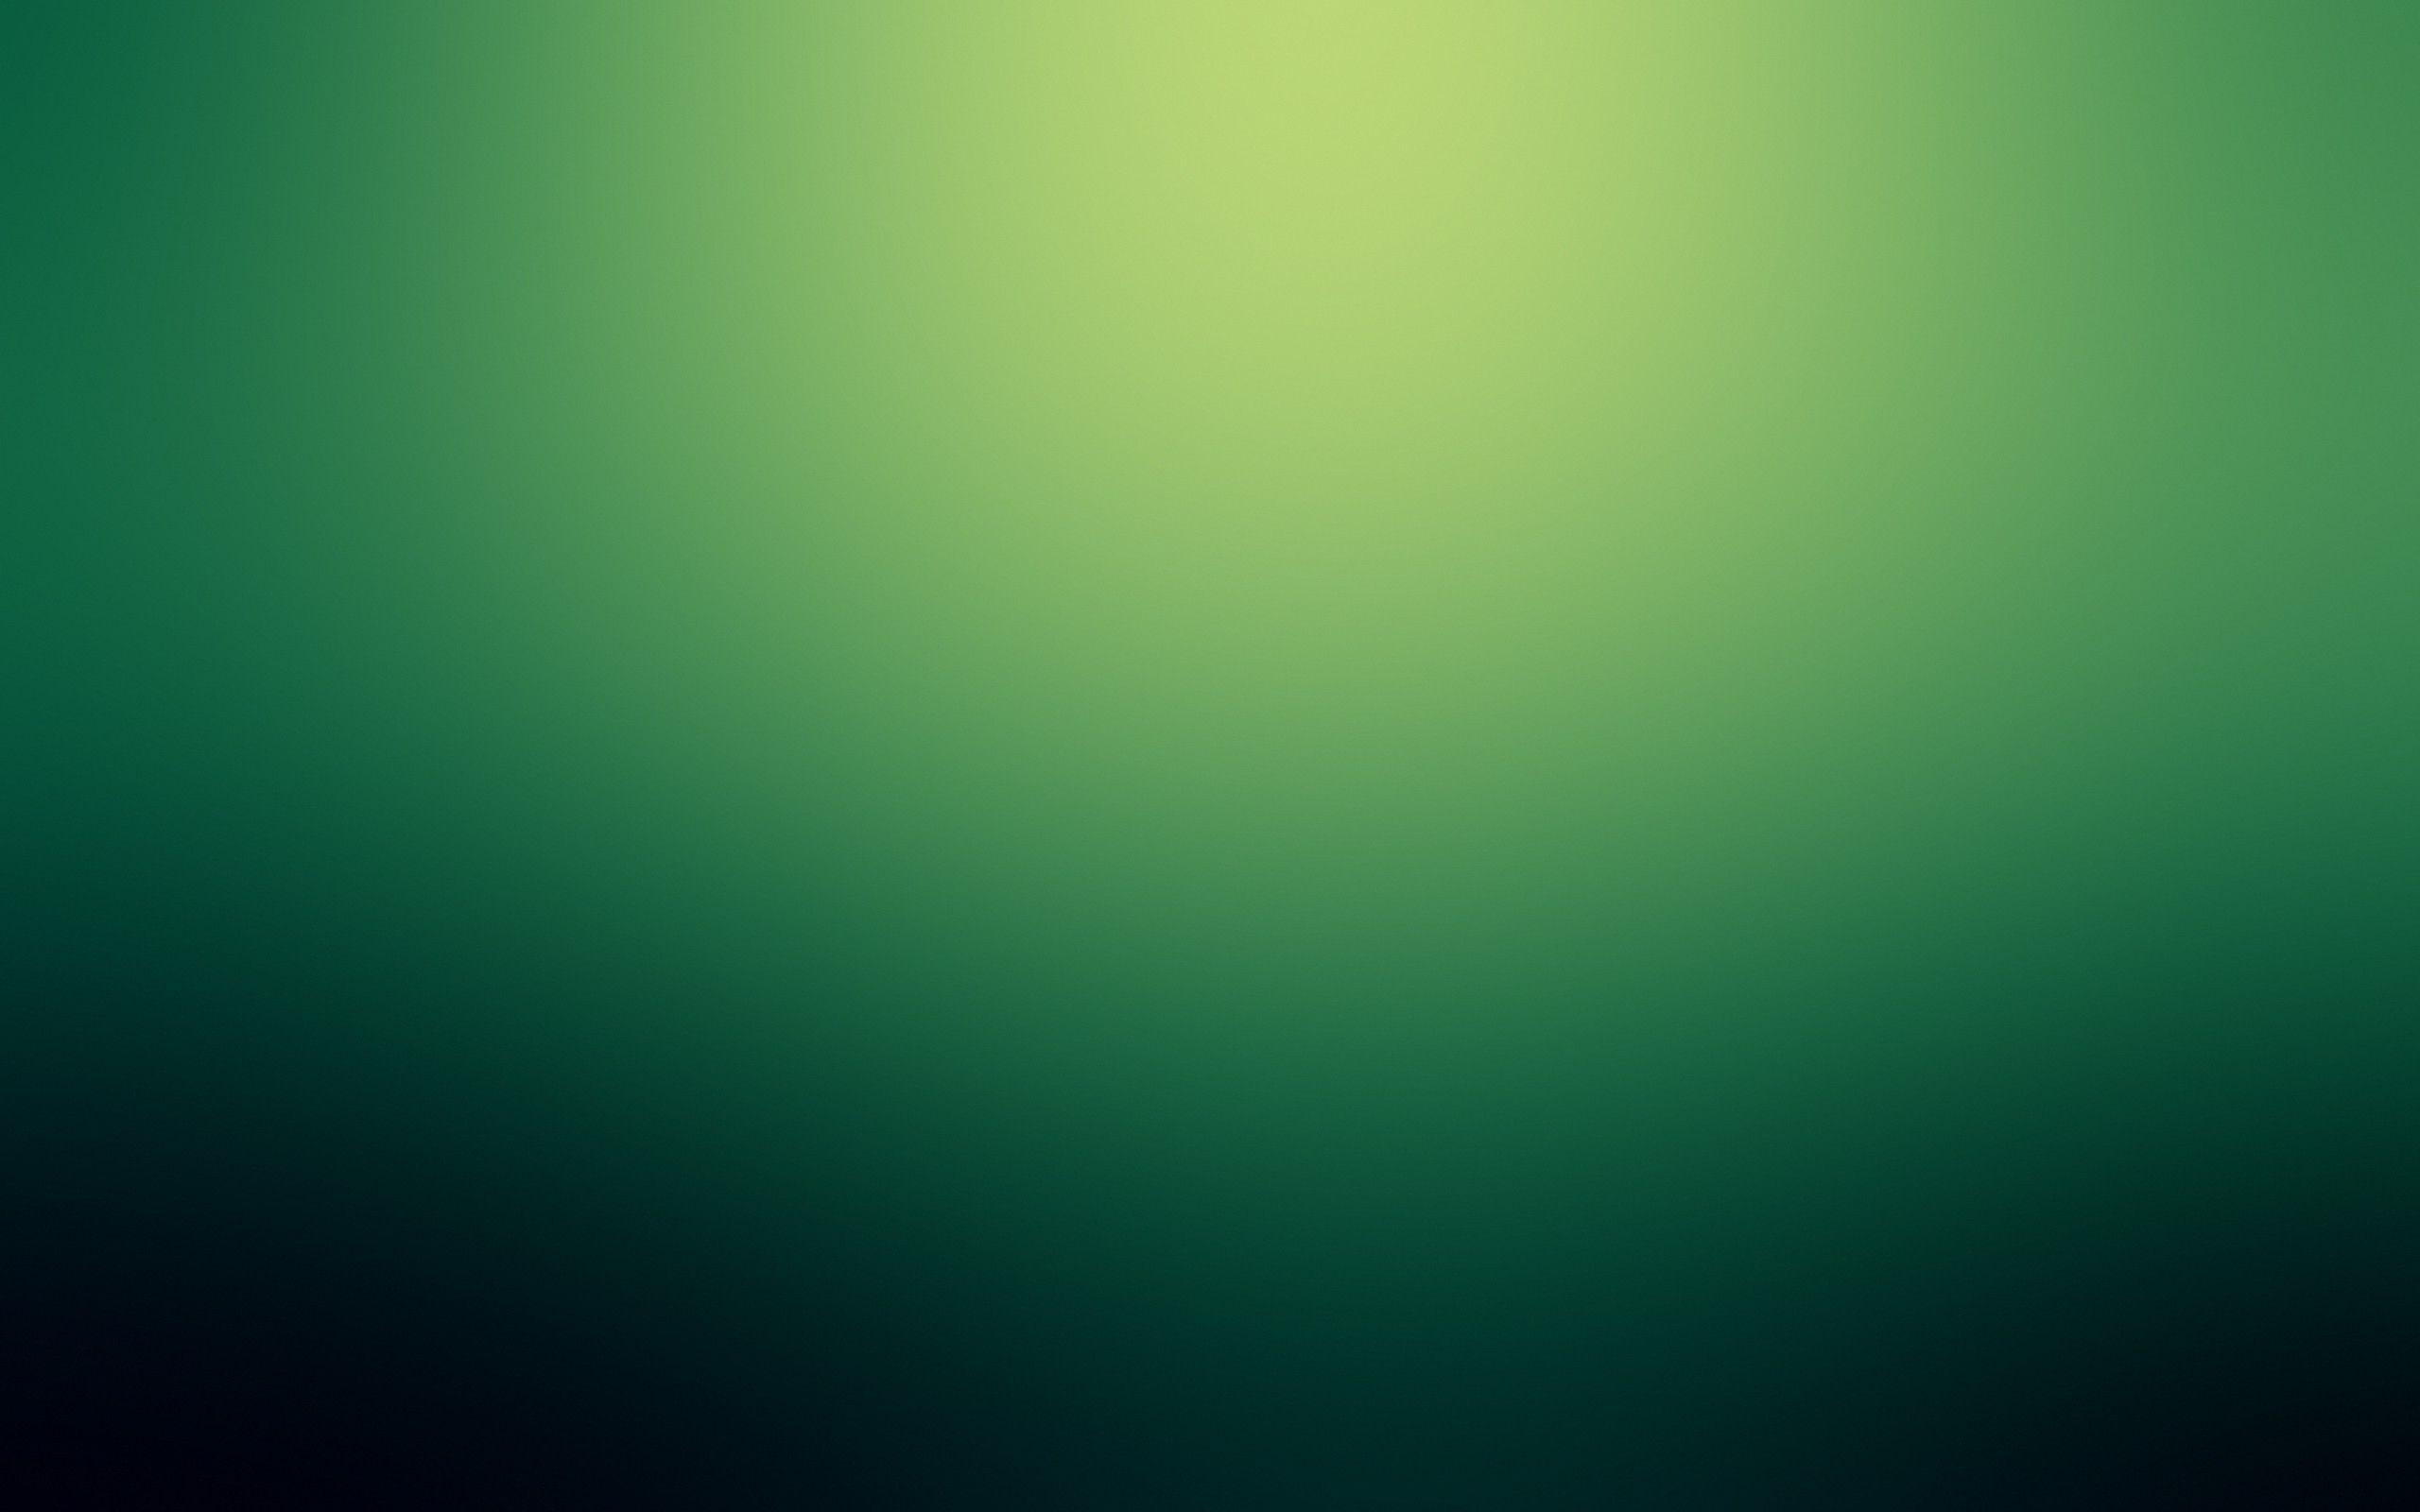 Hình nền gradient màu xanh lá cây ấn tượng này sẽ đưa bạn vào một không gian xanh thẳm và mát mẻ. Với thiết kế đơn giản nhưng không kém phần sáng tạo, bức hình này sẽ mang lại cho bạn nhiều cảm hứng và sự thư thái.